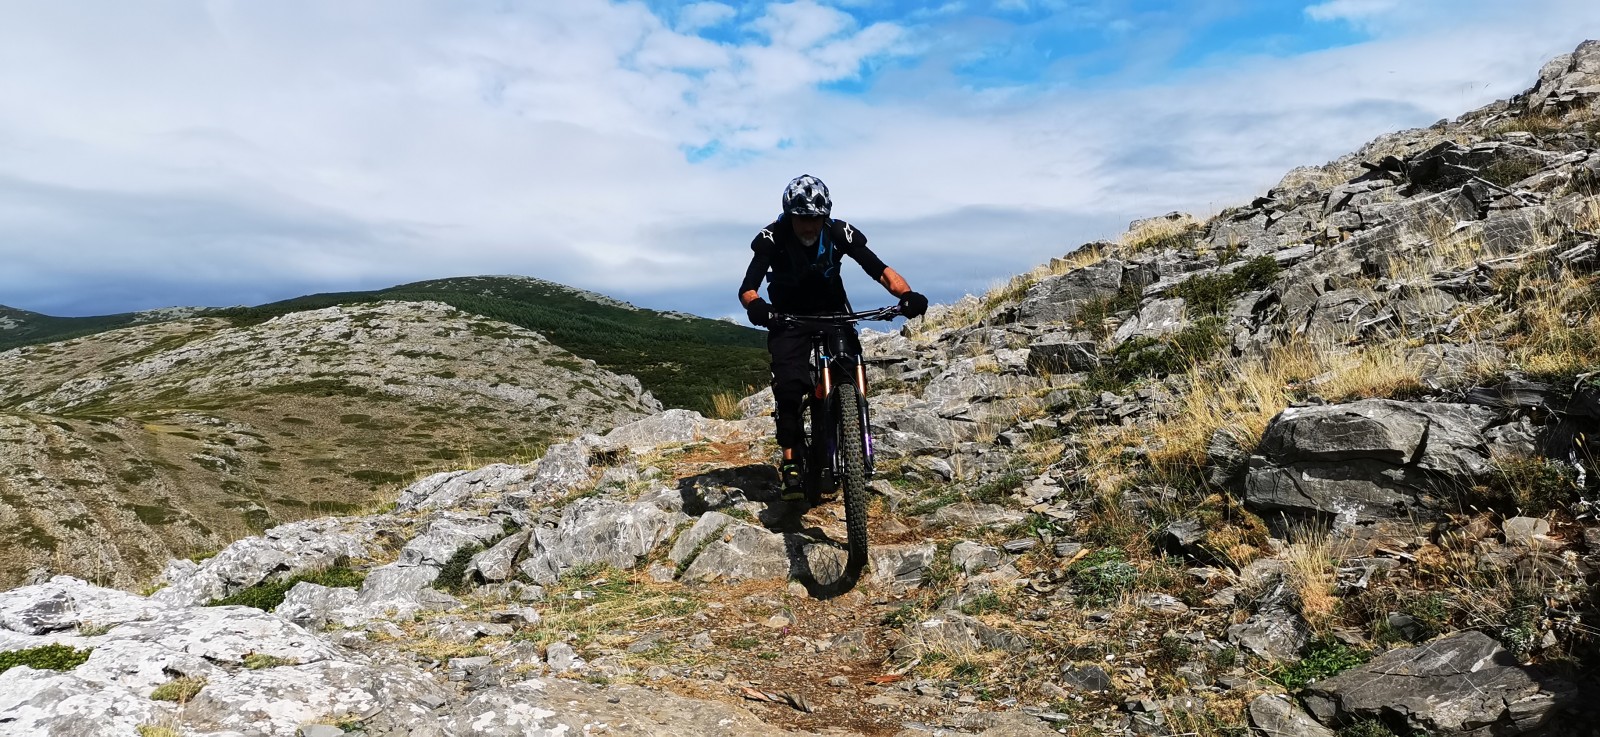 León acogerá un centro homologado, para la práctica de mountain bike, con más de 320 km de rutas.